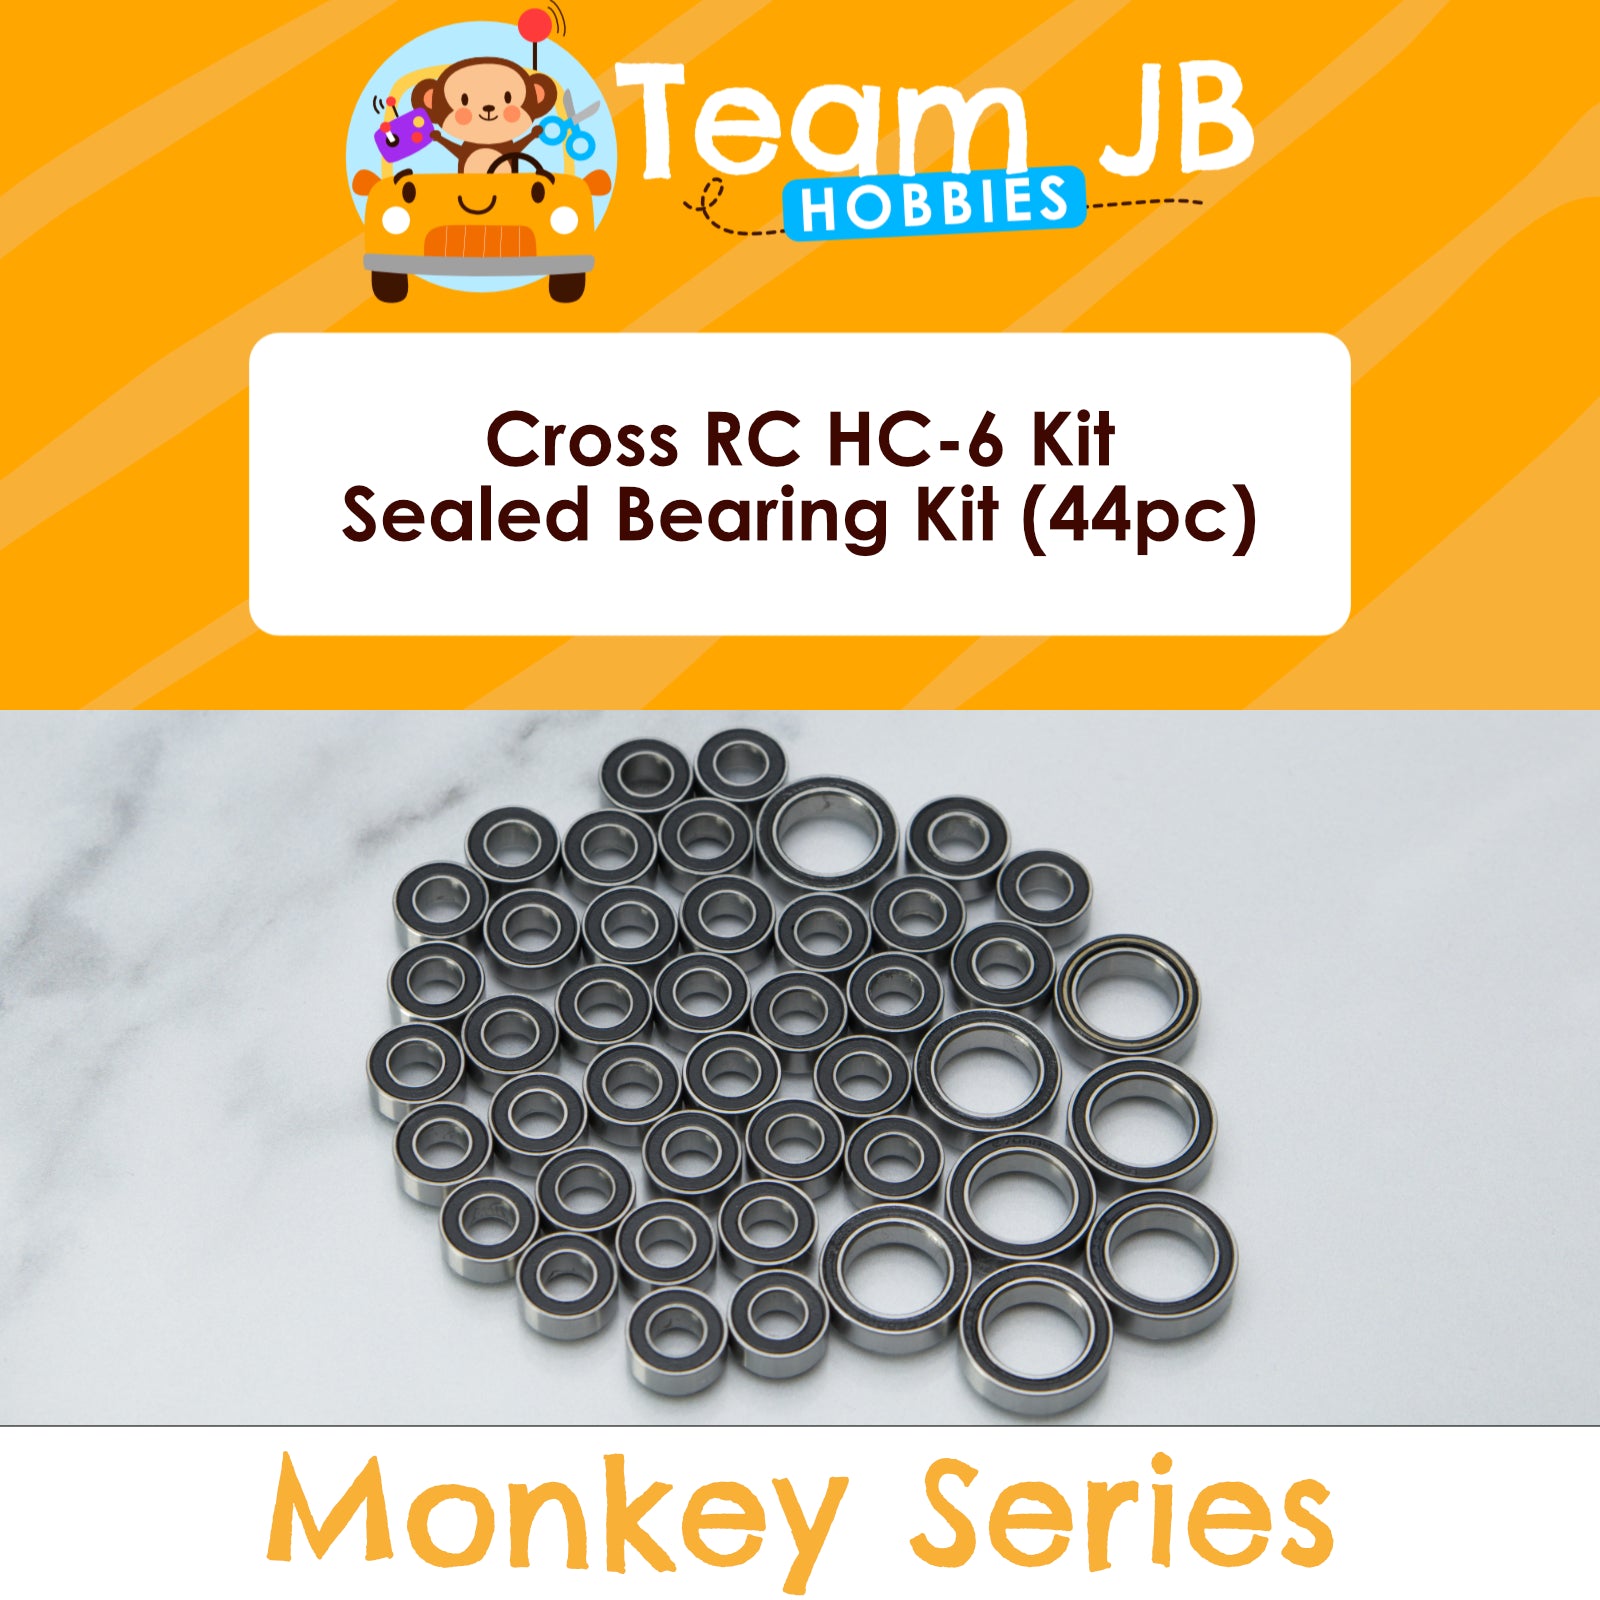 Cross RC HC-6 Kit - Sealed Bearing Kit